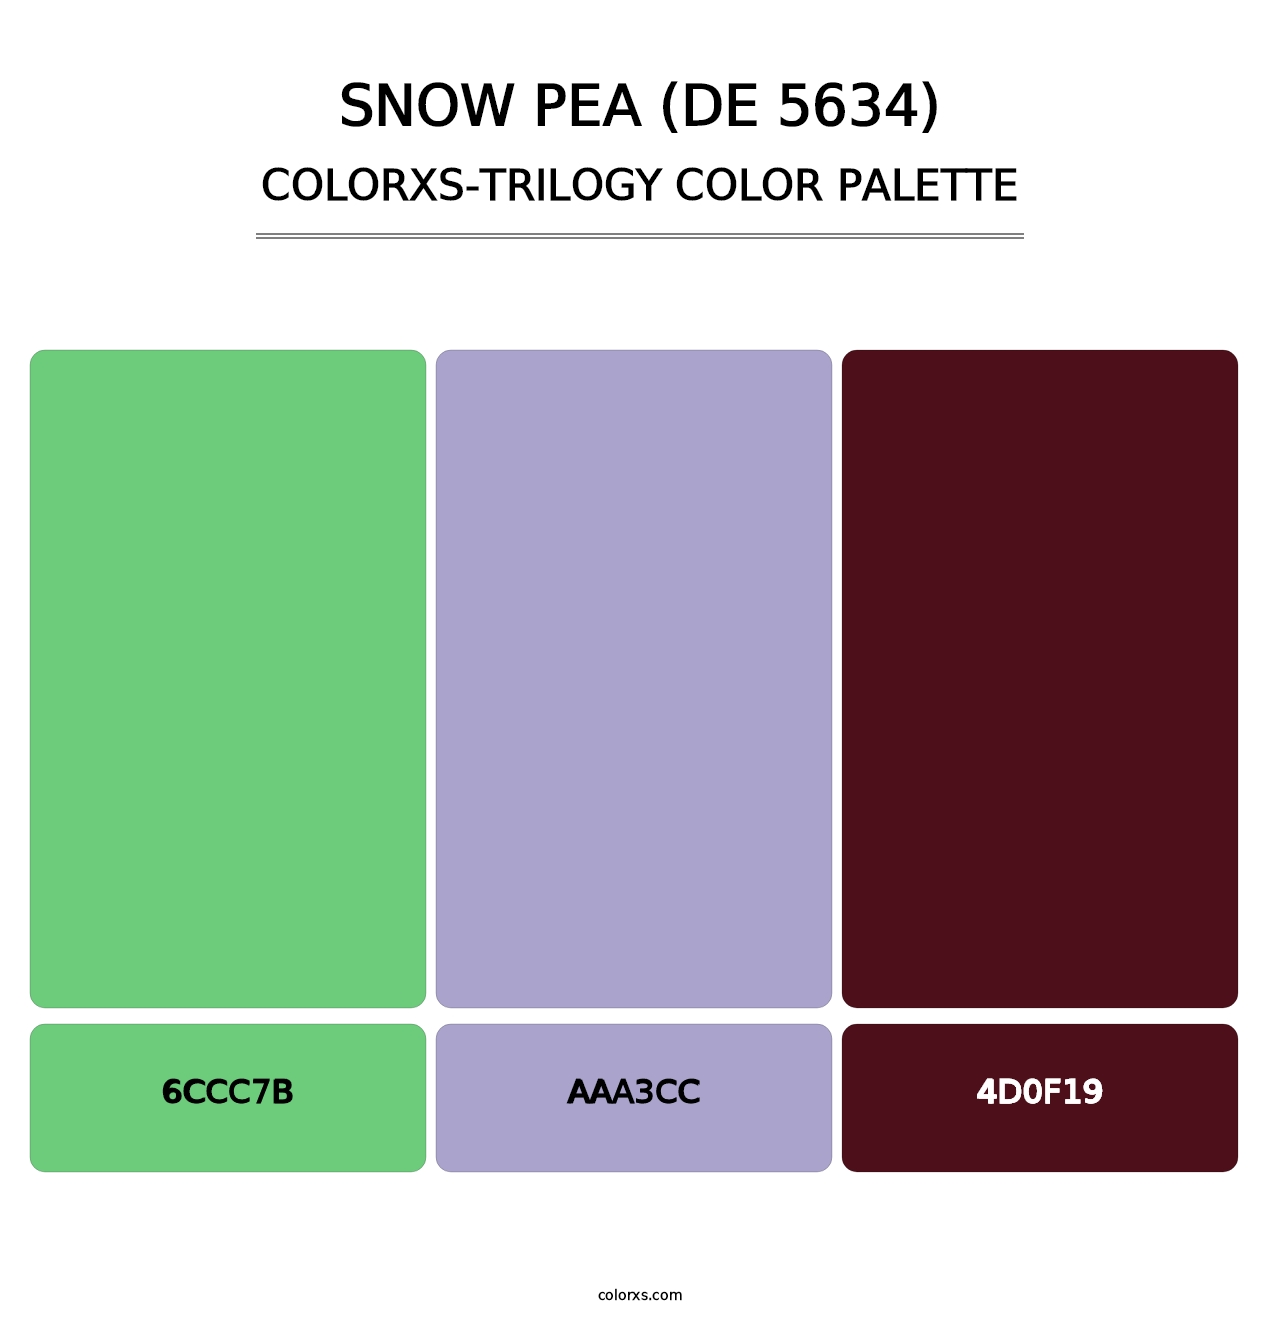 Snow Pea (DE 5634) - Colorxs Trilogy Palette